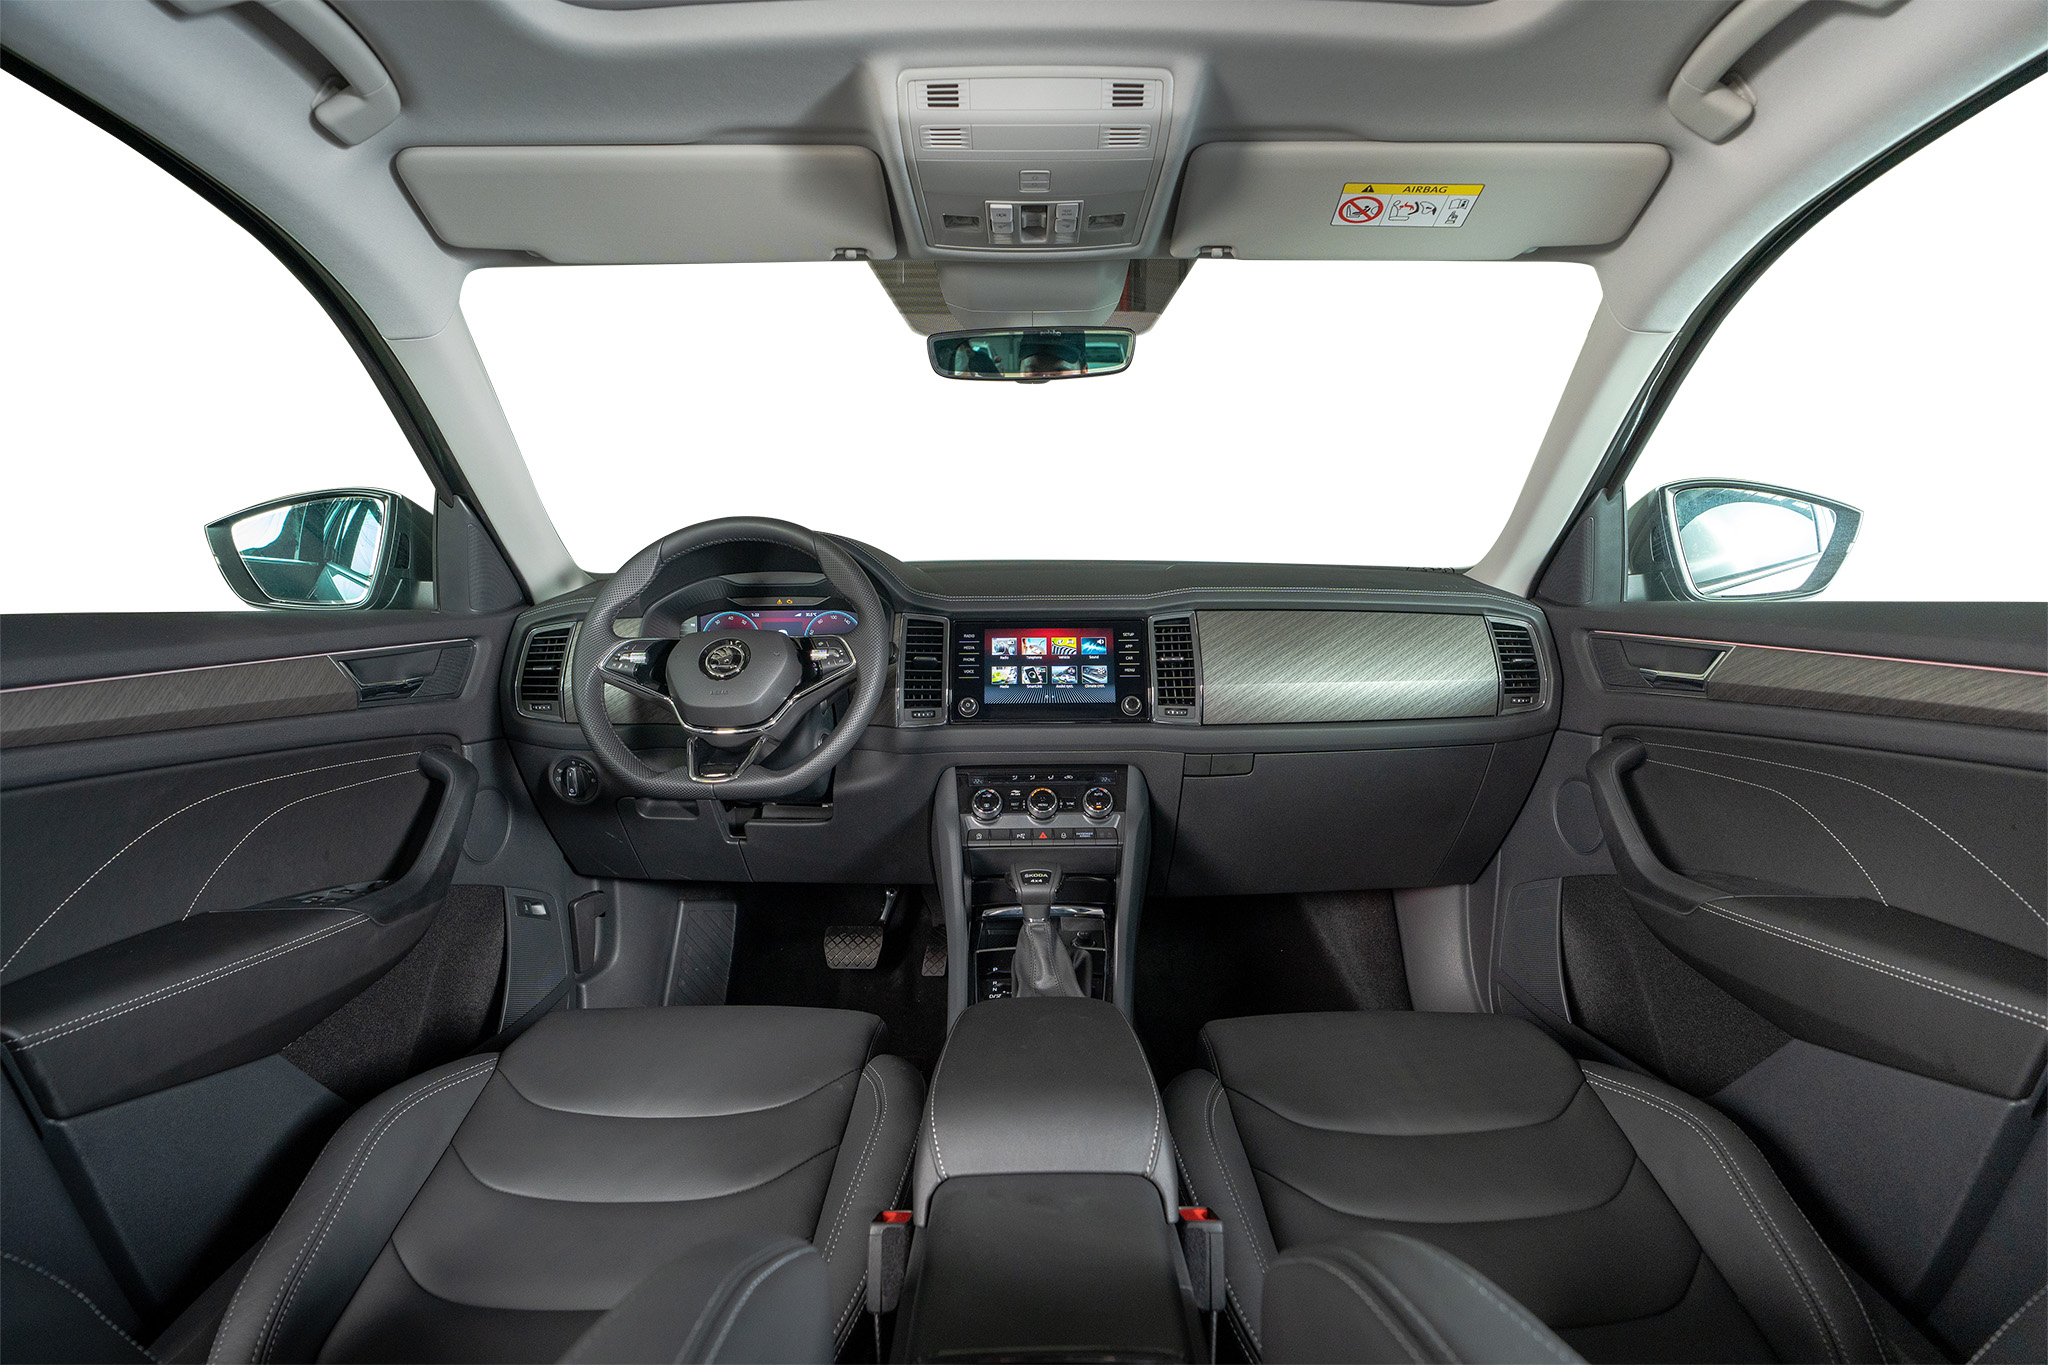 Không gian bên trong xe mang đến sự sang trọng, tiện nghi và đúng chất một chiếc SUV cỡ lớn.